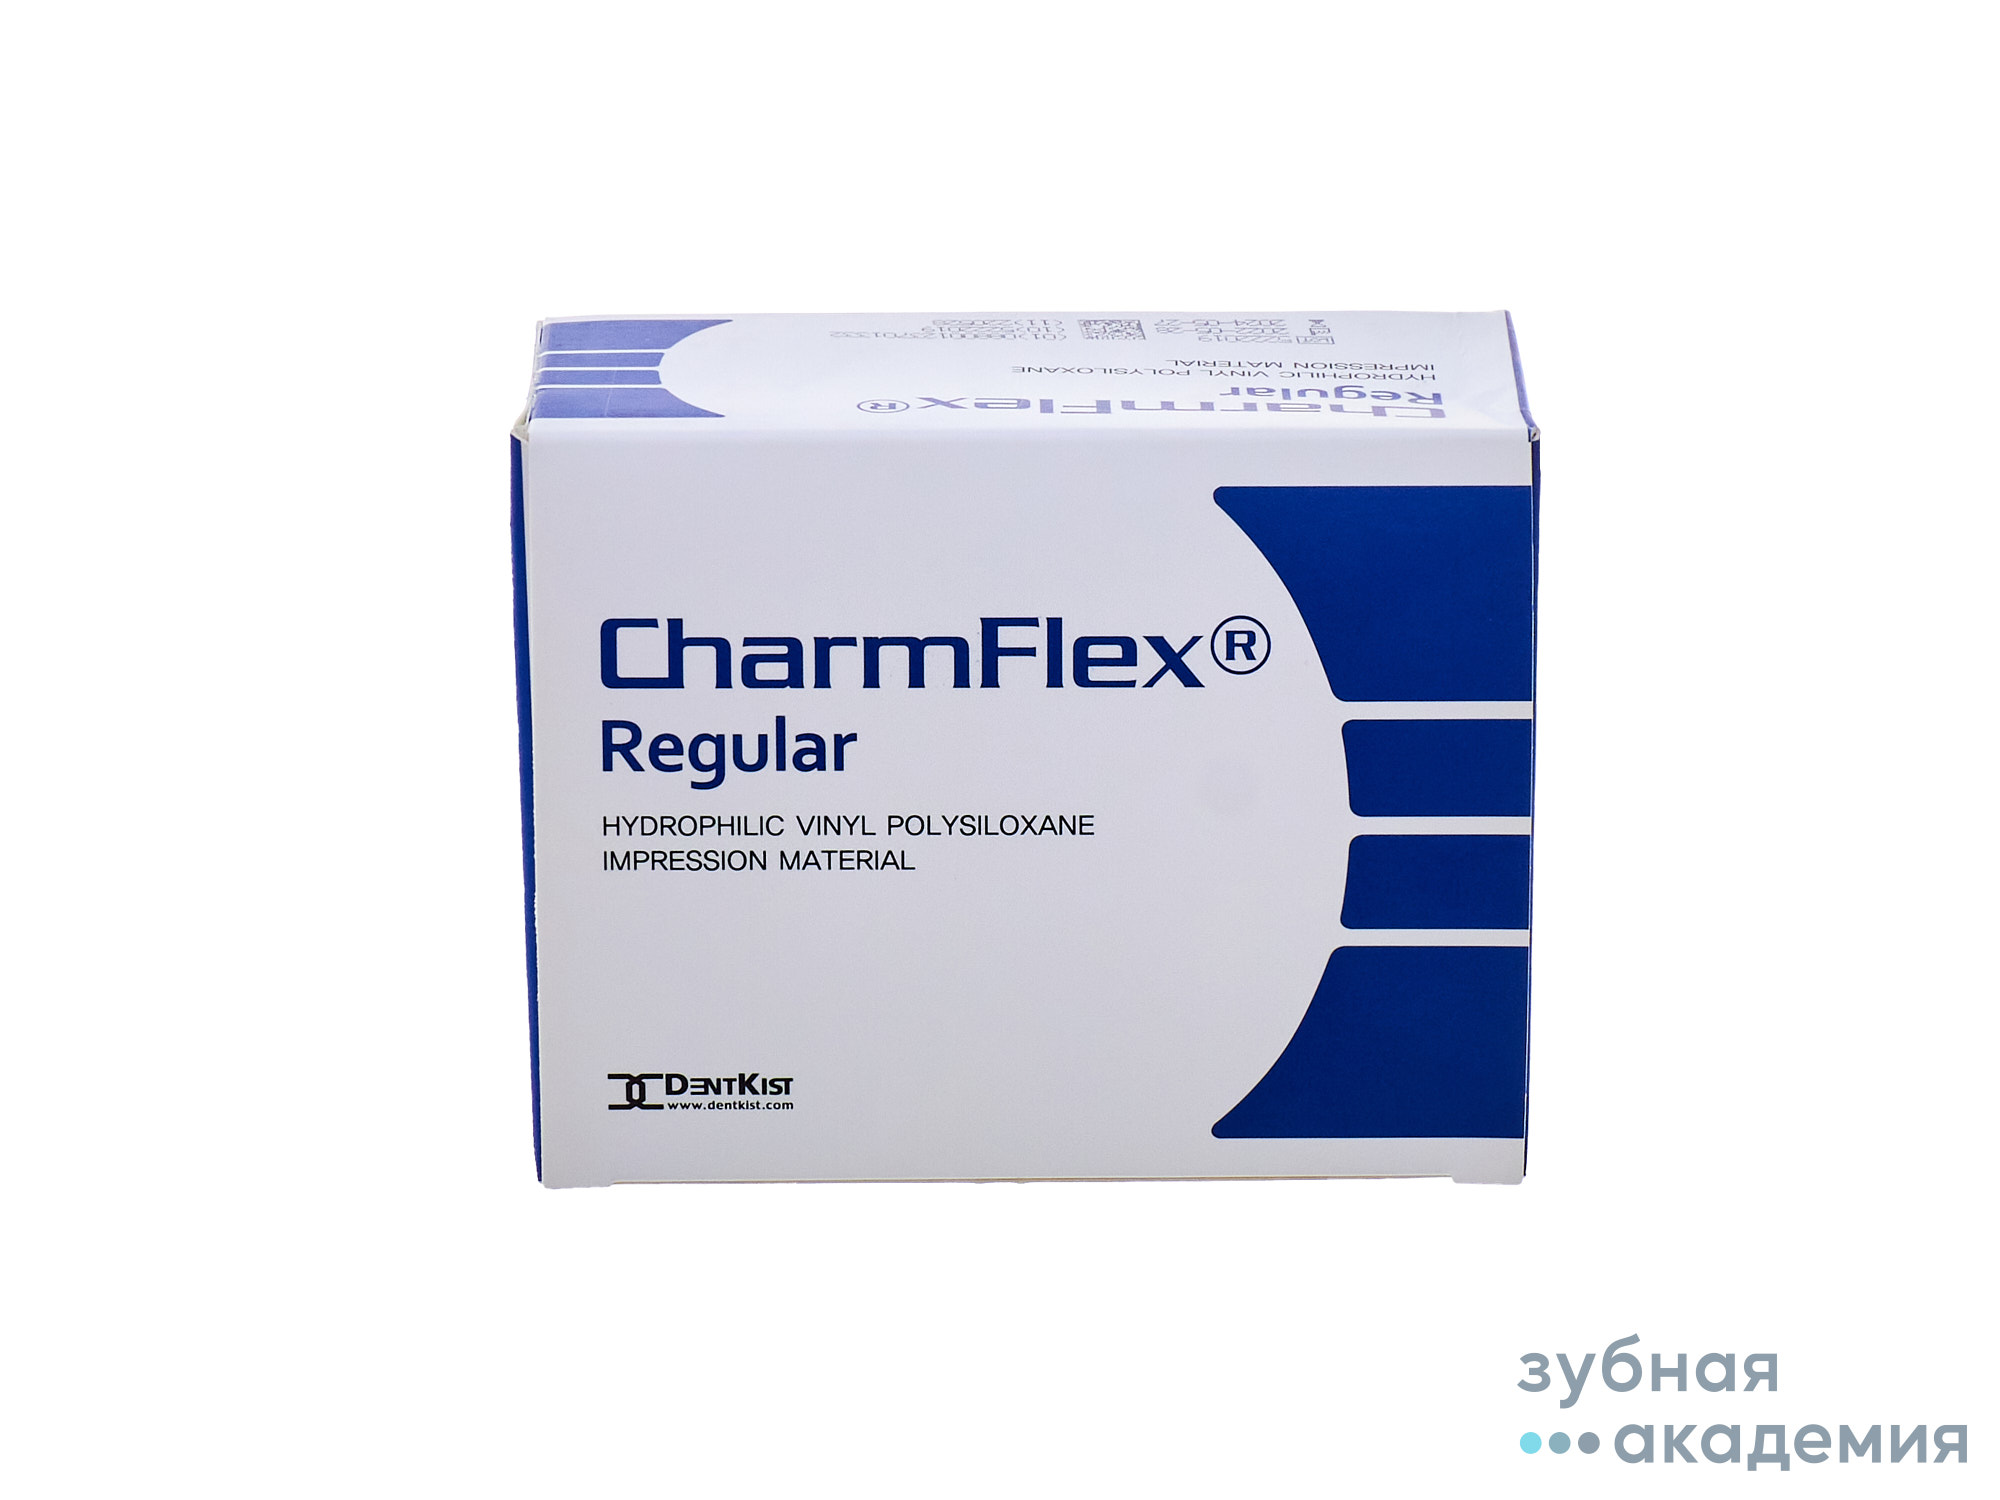 CharmFlex Regular/ЧамФлекс Регуляр упак 2*280 мл/DentKist, Корея.